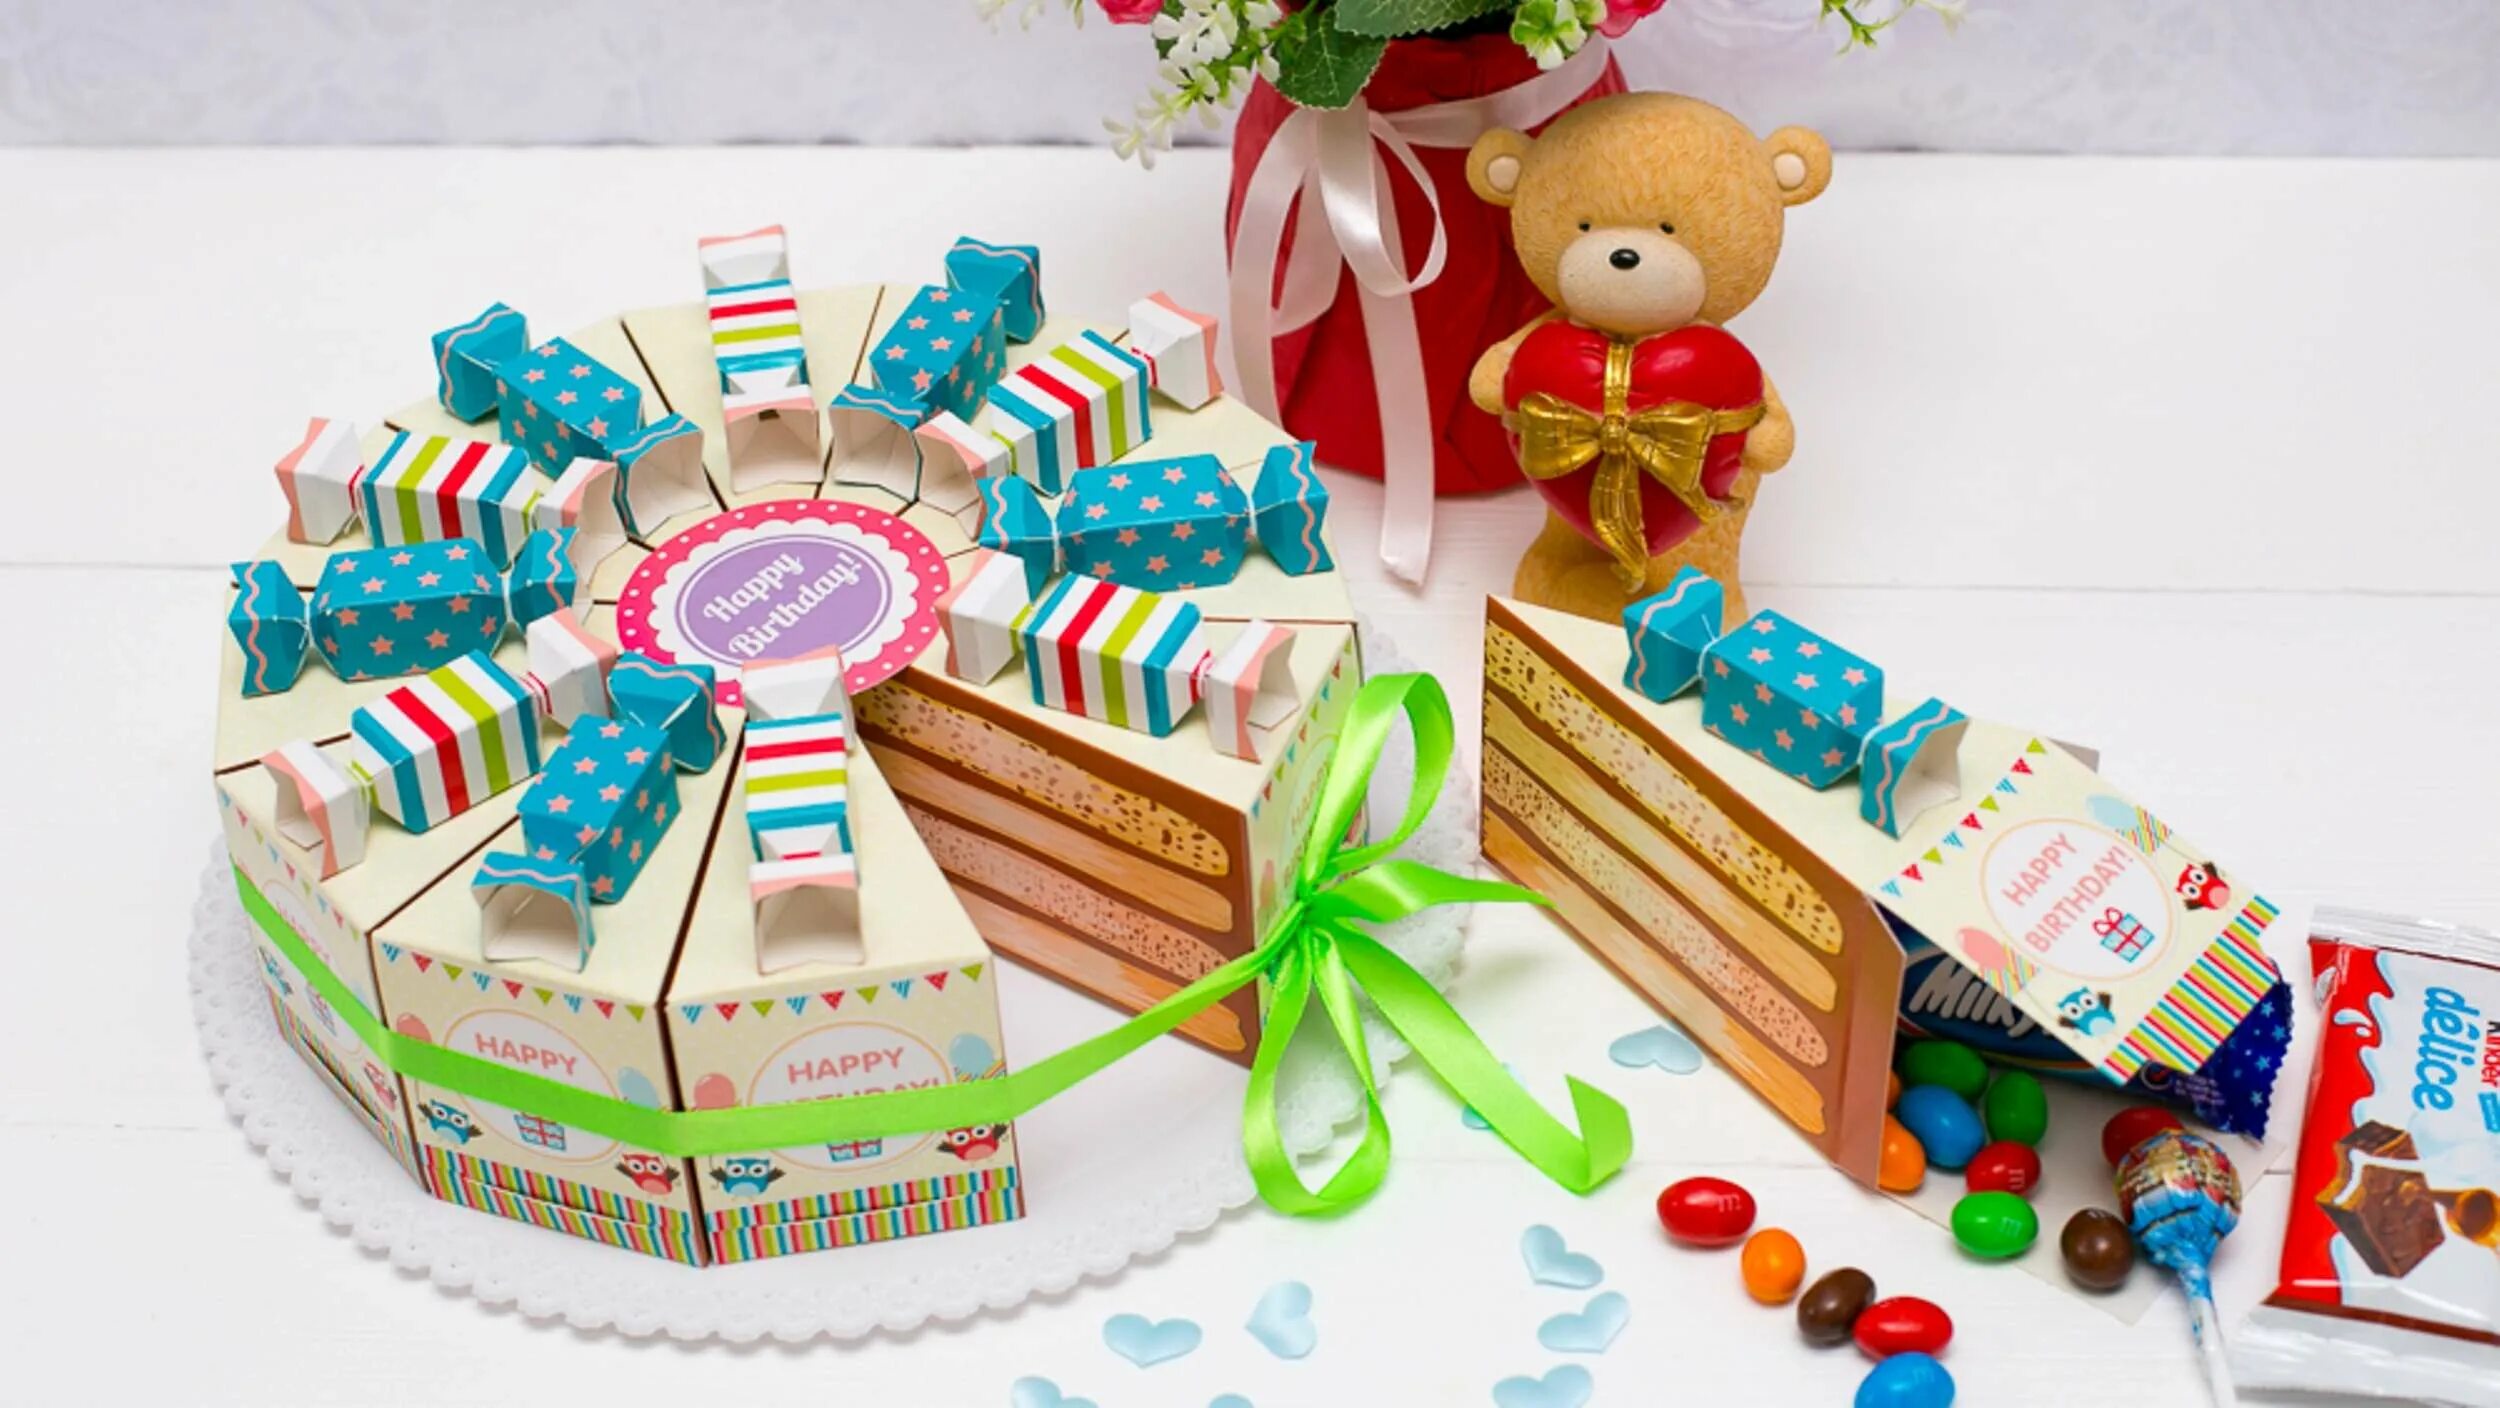 Торт подарок. Картонный торт. Торт бумажный с подарками. Пожелания в тортик из картона.